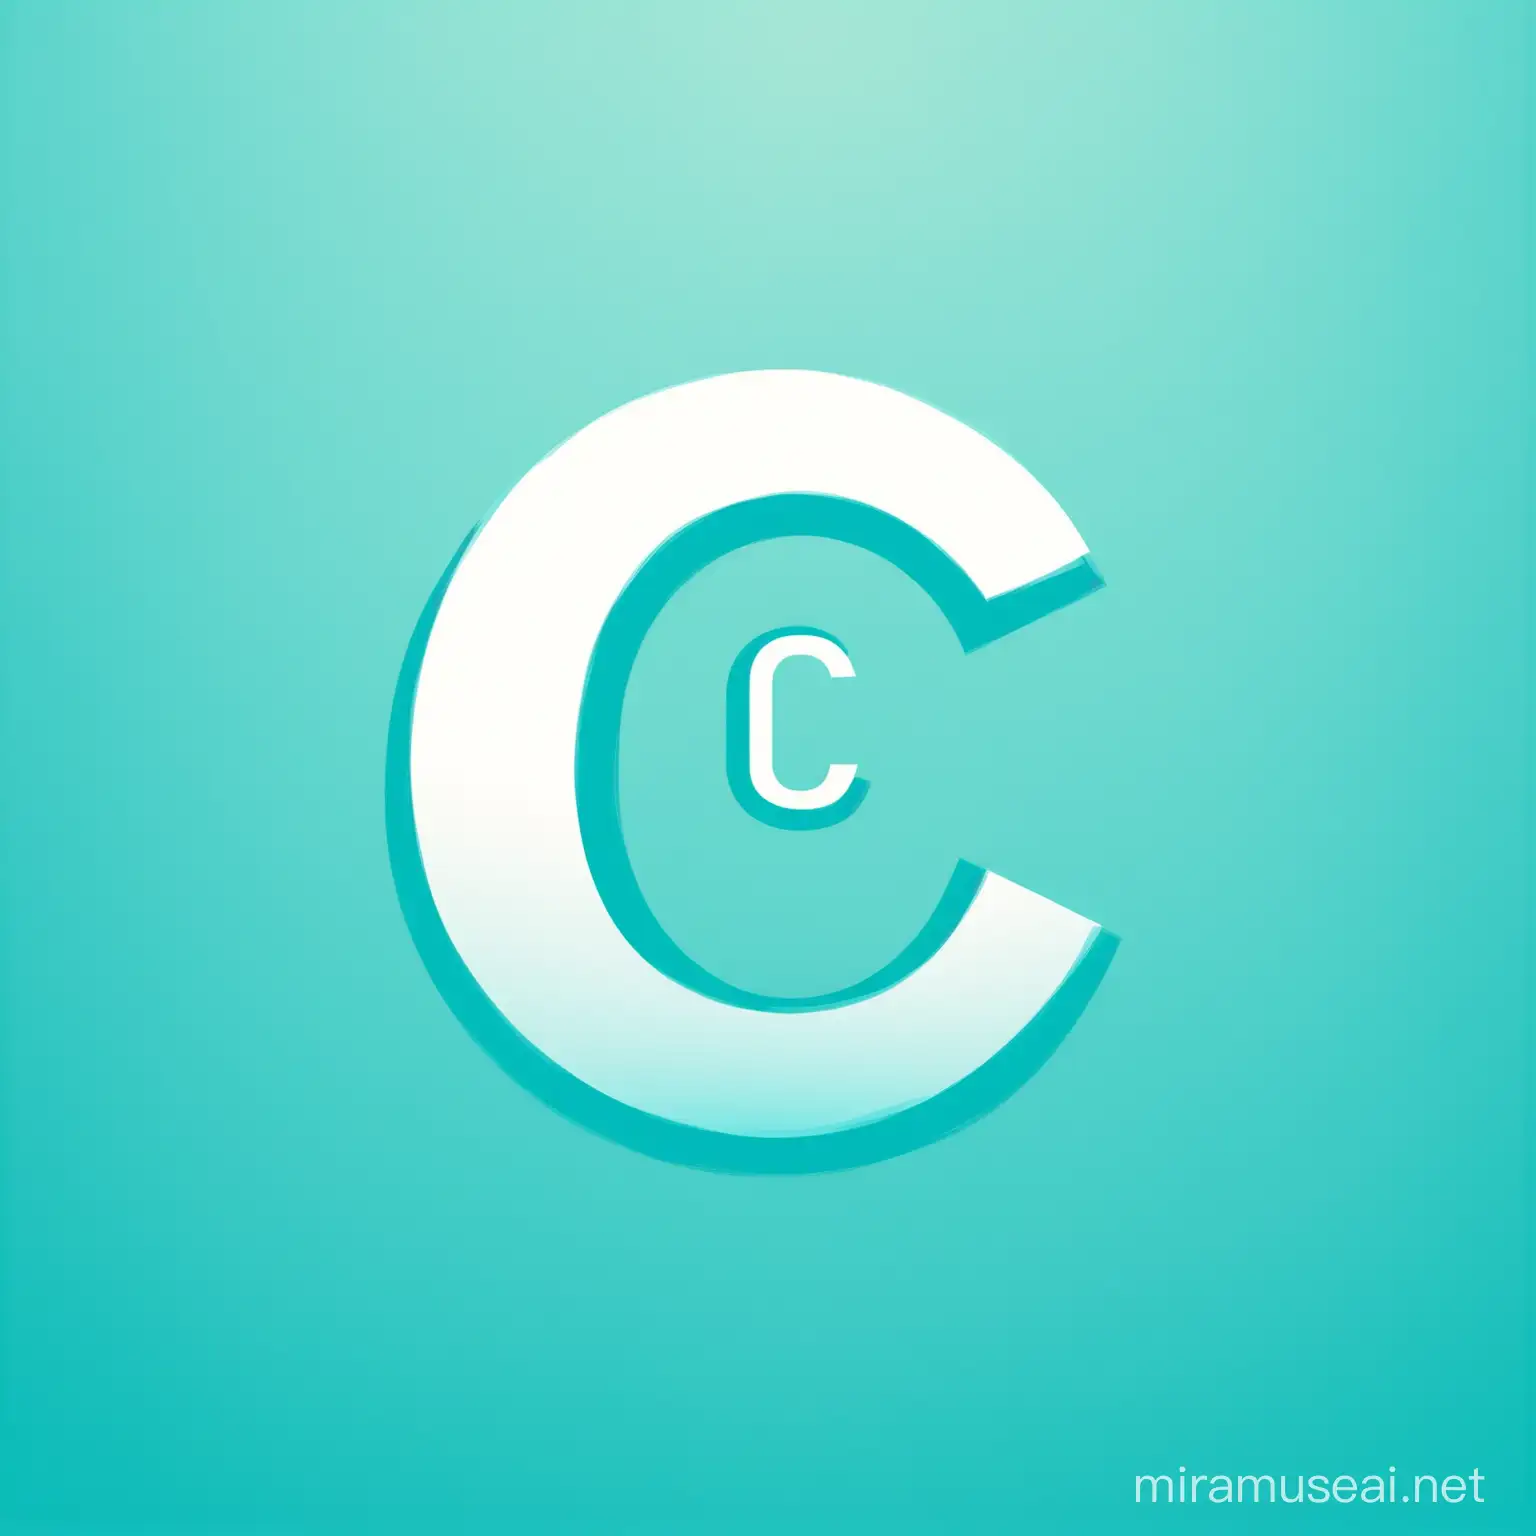 buatkan logo keren sekali dan unik dari huruf C dengan latar berwarna biru muda